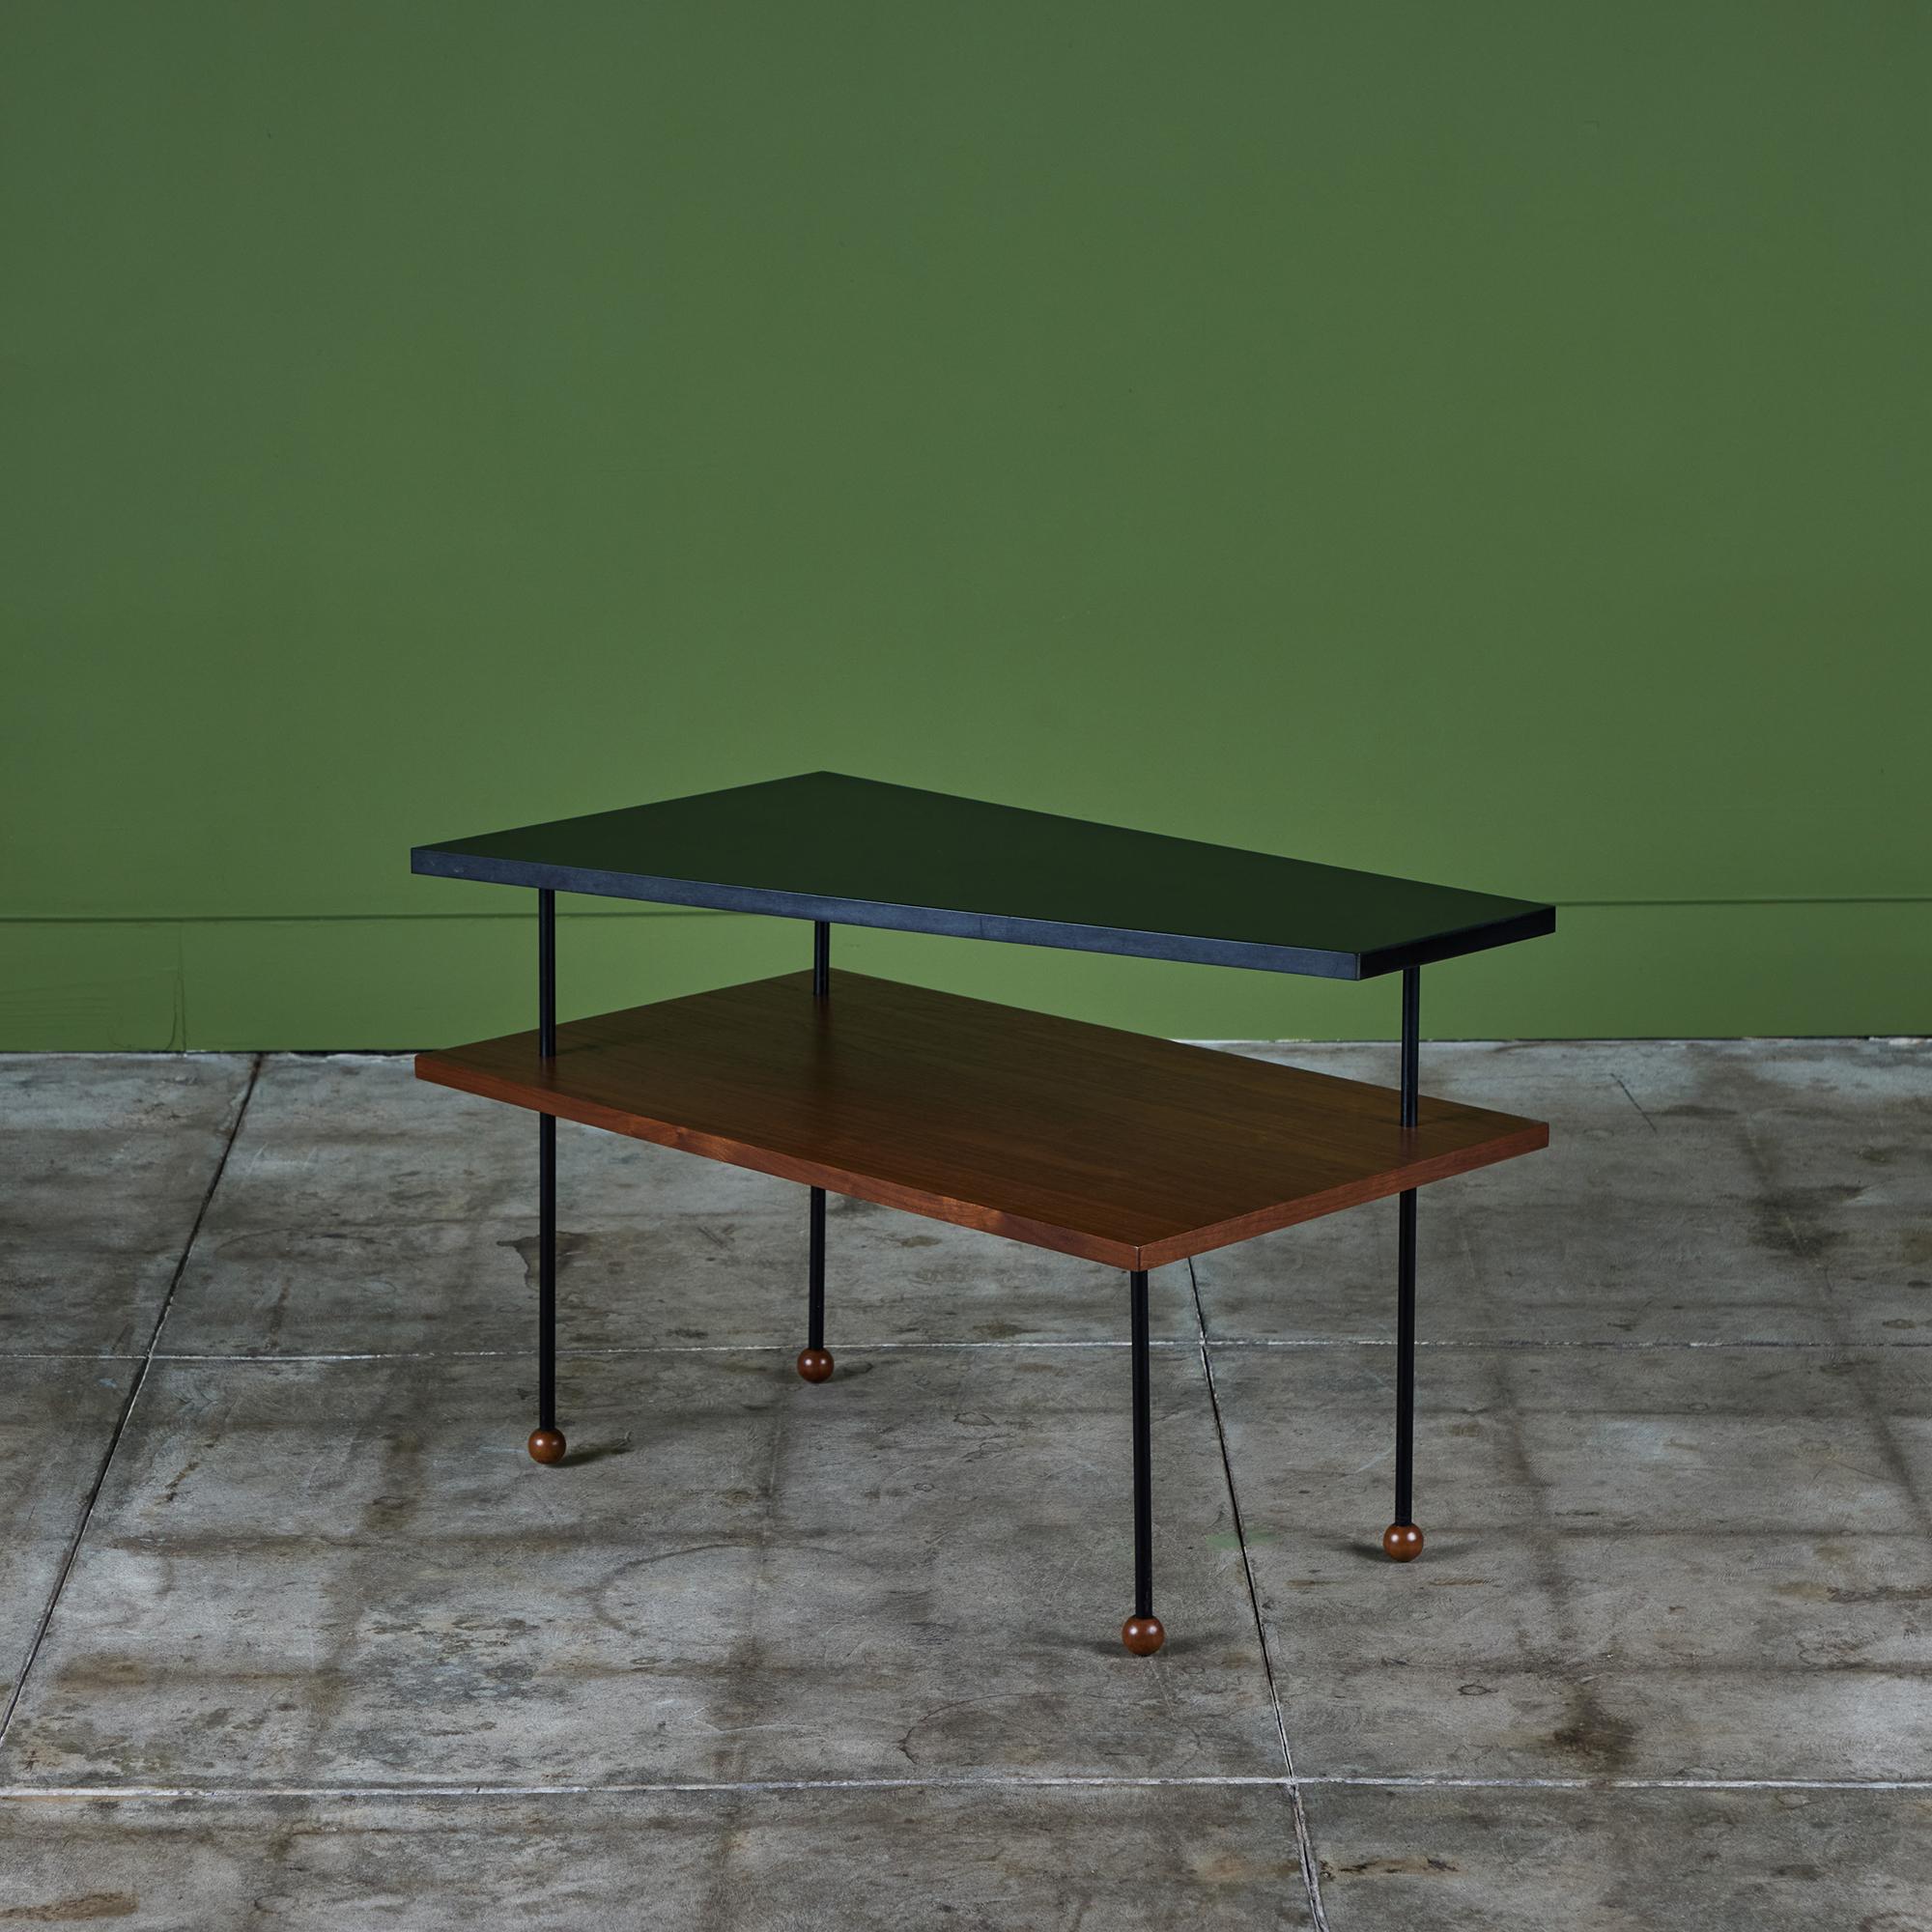 Seltener Beistelltisch von Greta Grossman für Glenn of California, ca. 1950er Jahre. Der Tisch verfügt über eine asymmetrische Ablage aus schwarzem Laminat, die auf einer rechteckigen Ablage aus Walnussholz ruht. Die Regale werden von vier dünnen,